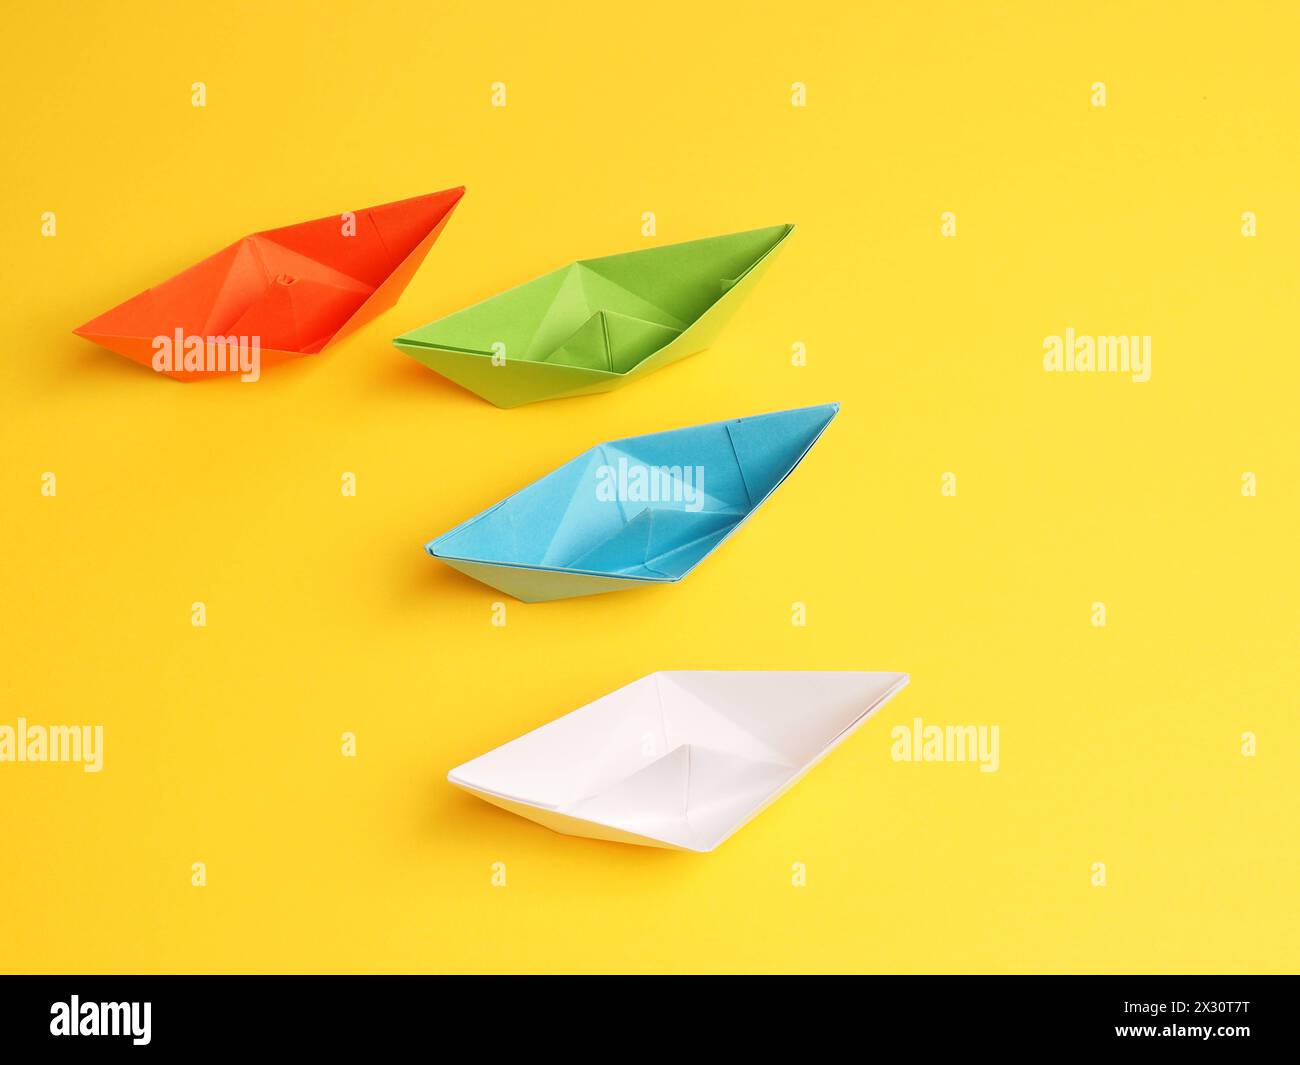 Quatre bateaux en papier différents sur fond jaune, concept de travail d'équipe Banque D'Images